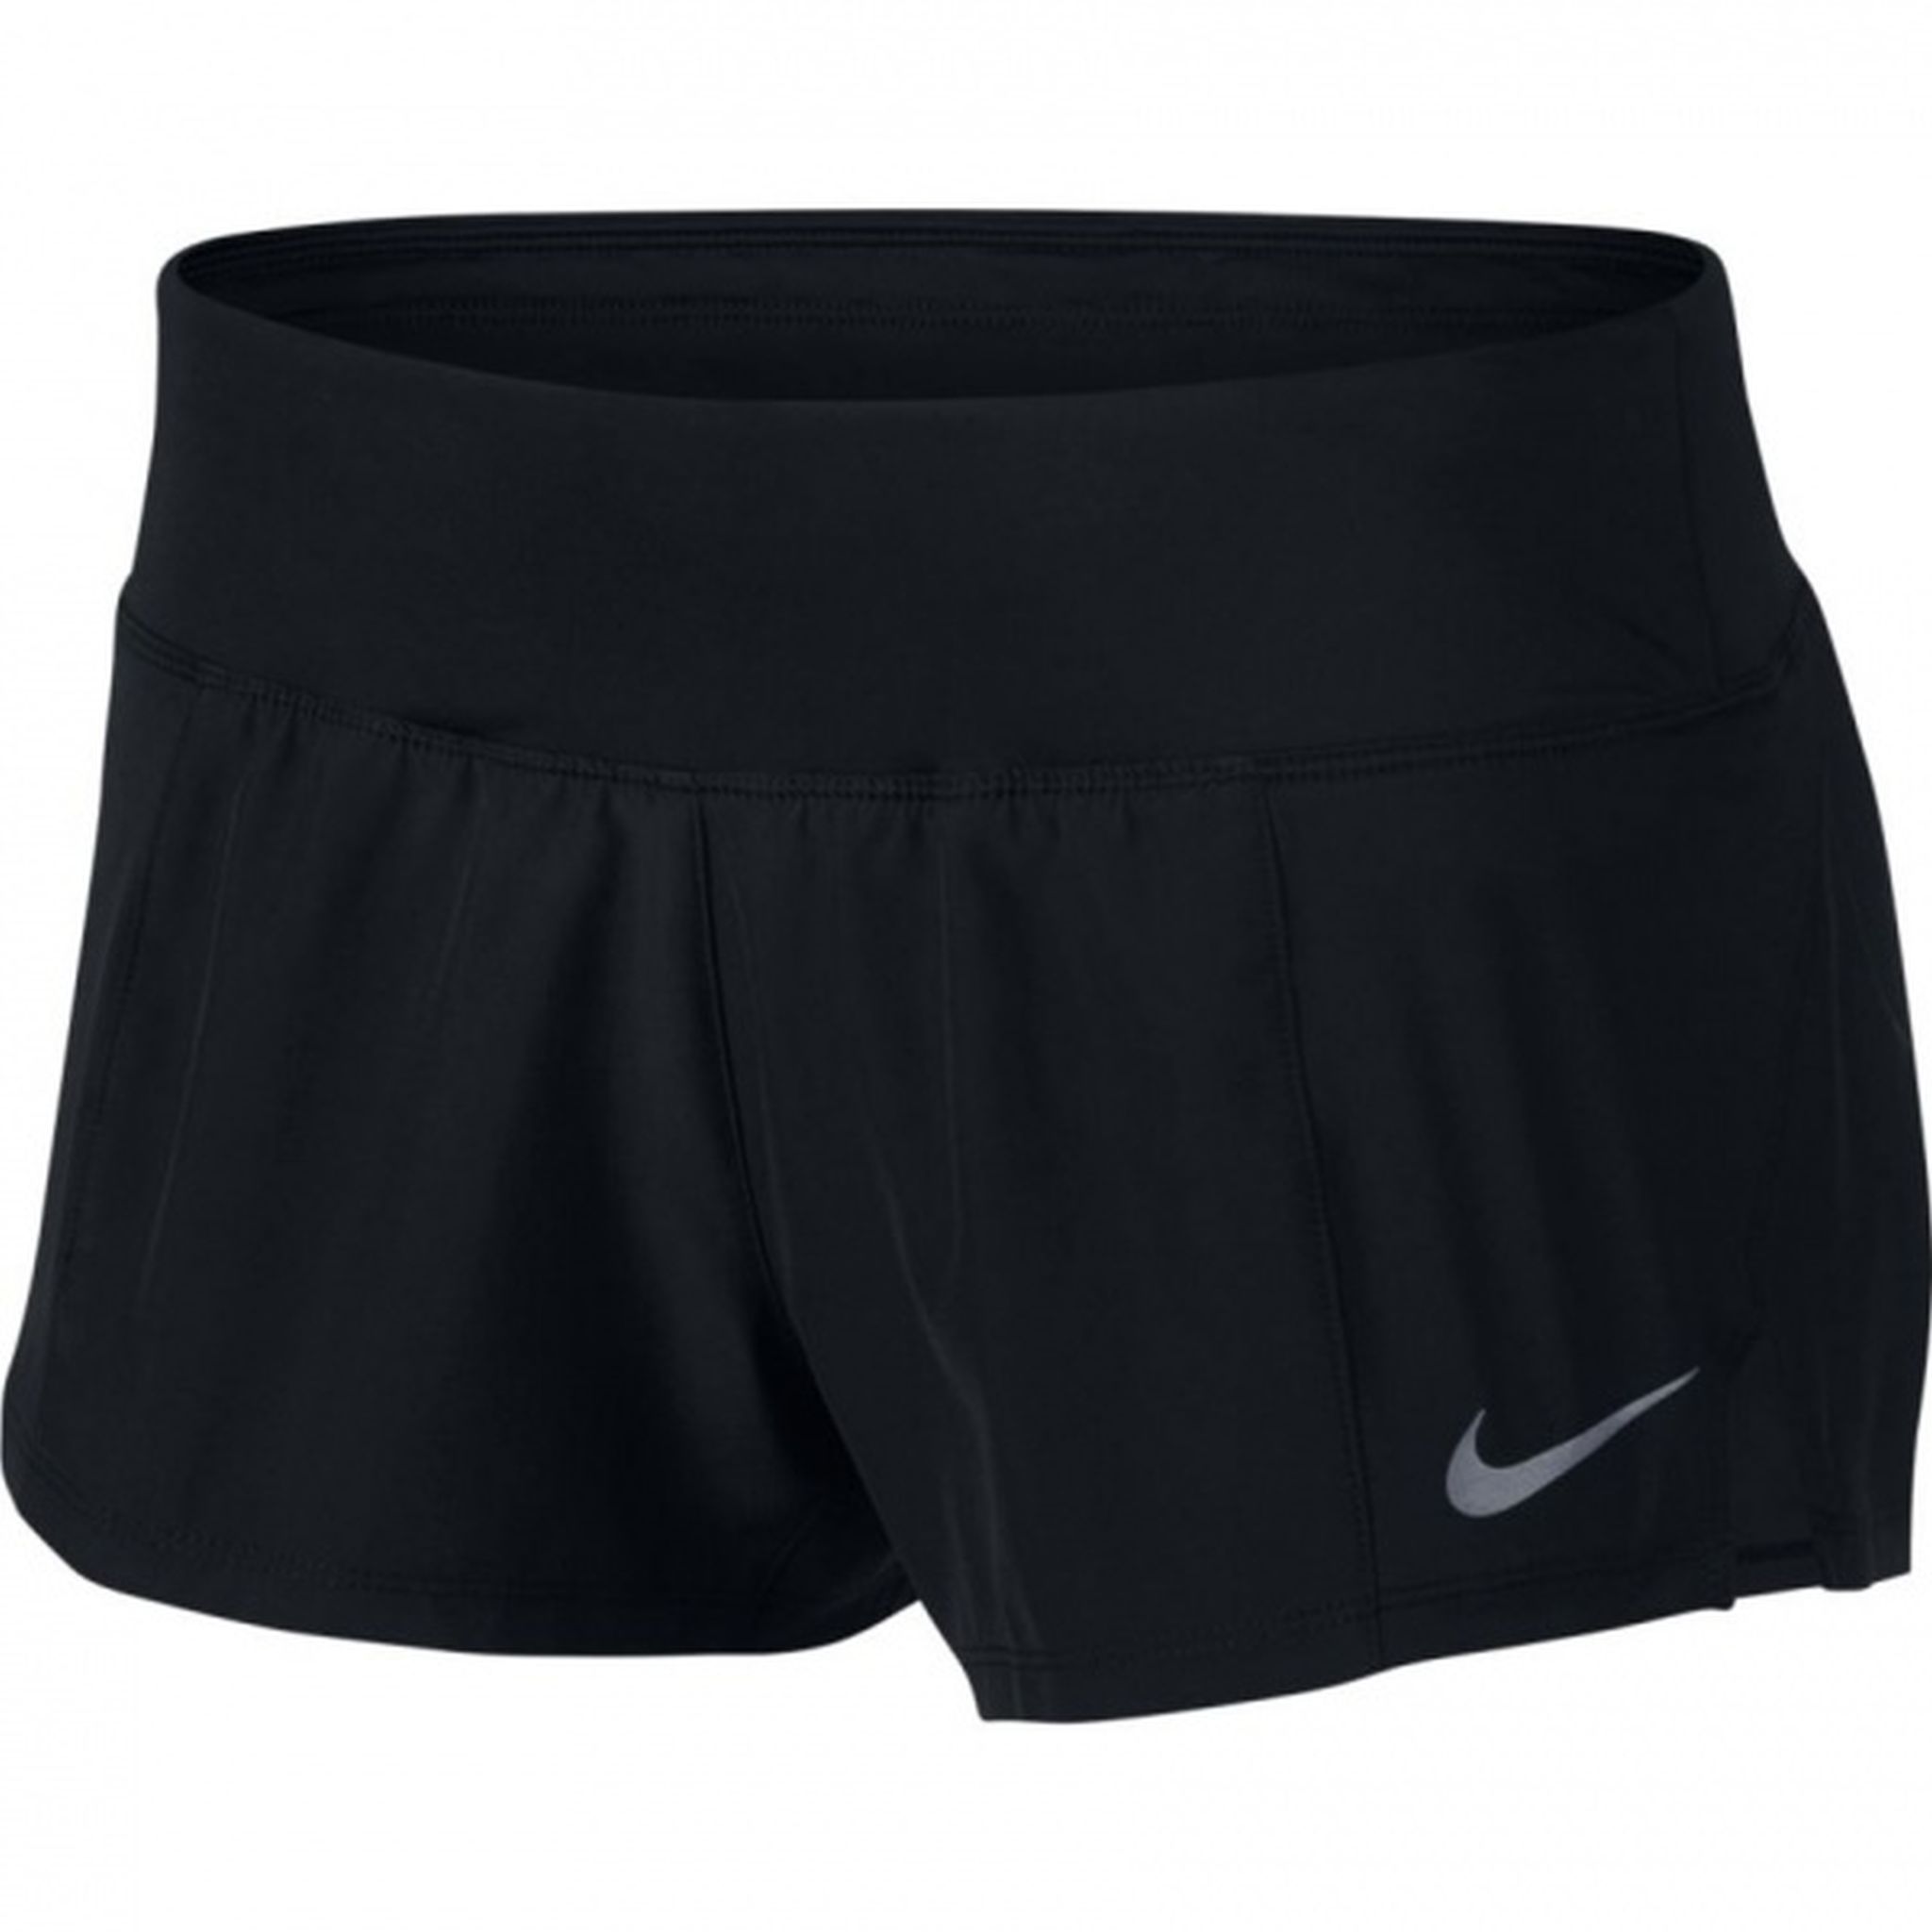 Nike Womens Dry 3-inch Running Short